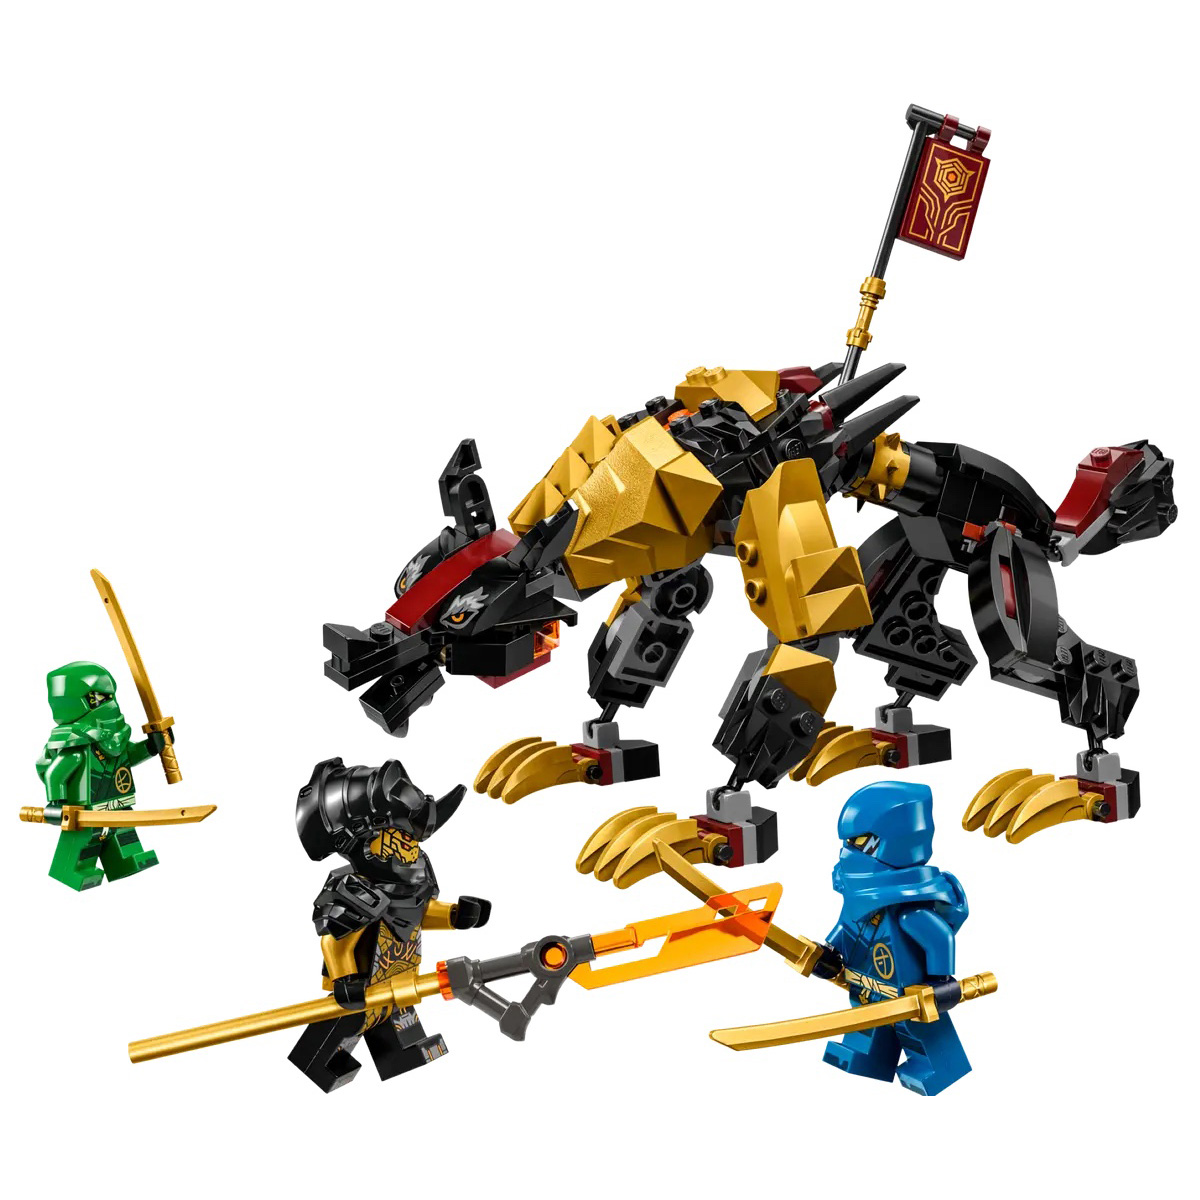 LEGO(R) Ninjago Imperium Dragon Hunter Hound